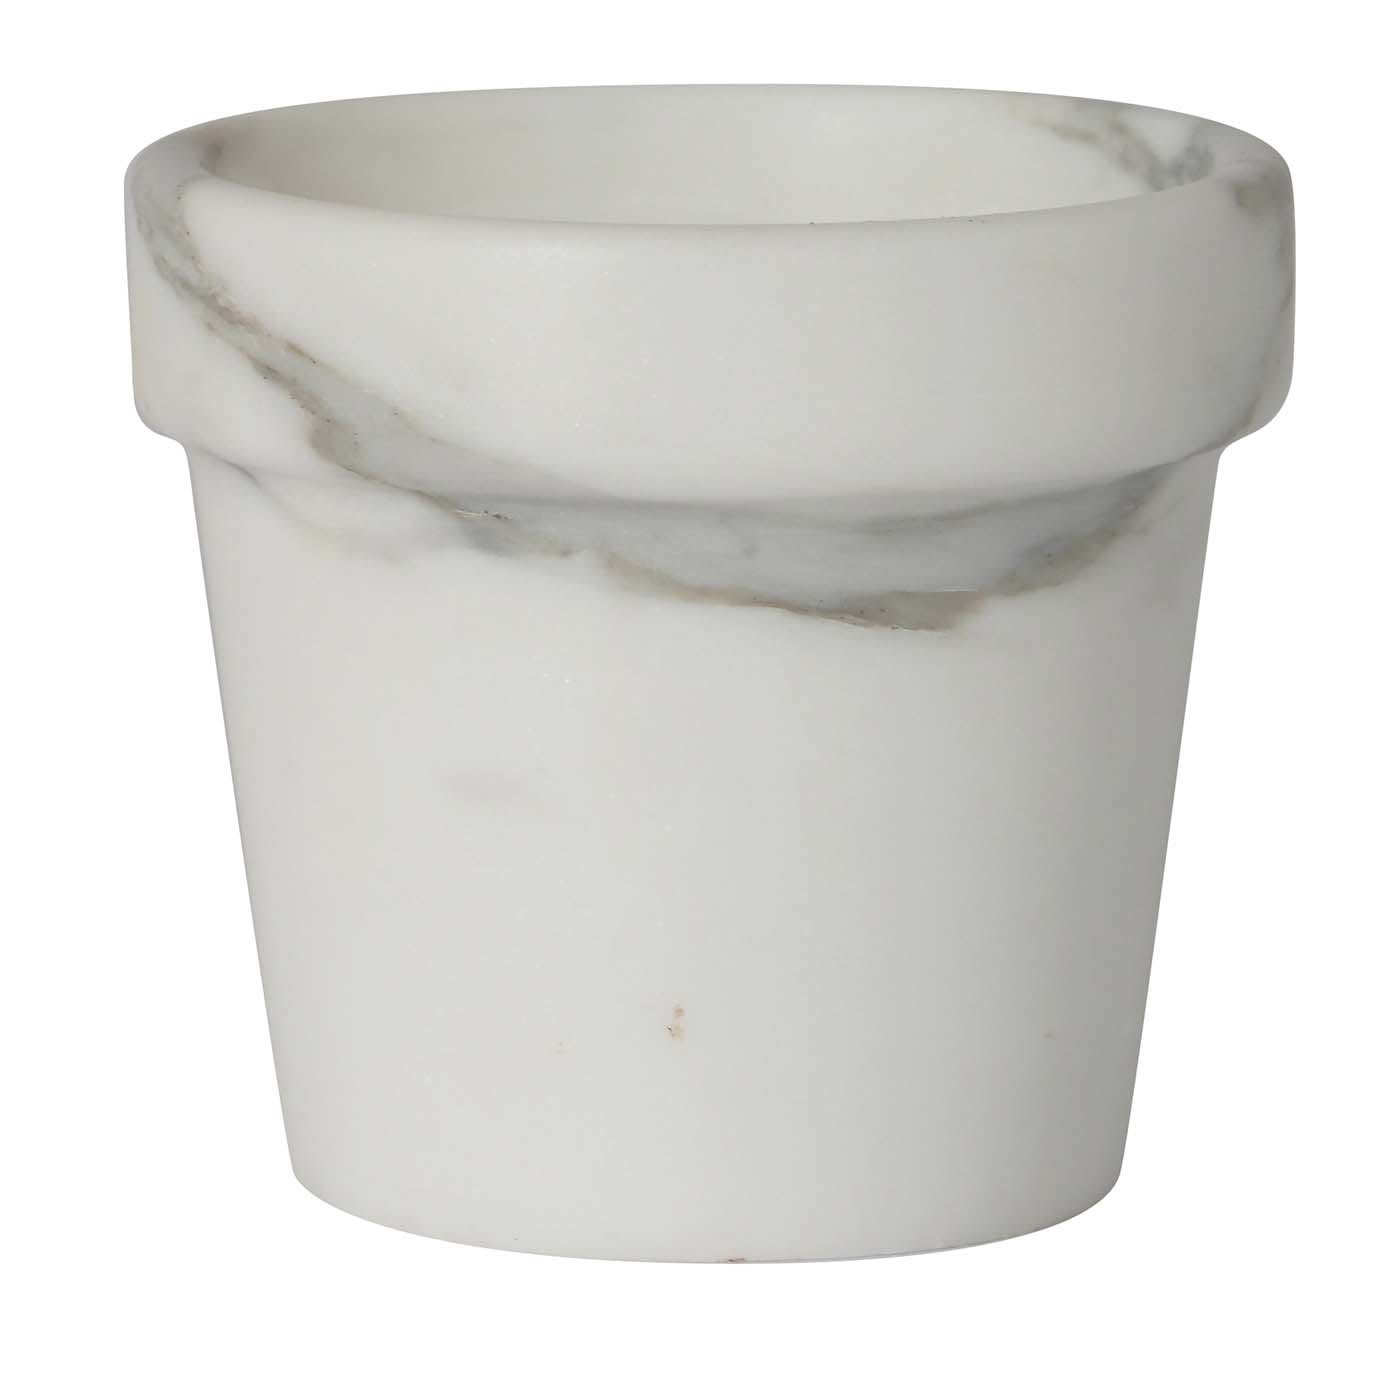 Mini Cactus Vase in White Carrara Marble - Carrara Home Design